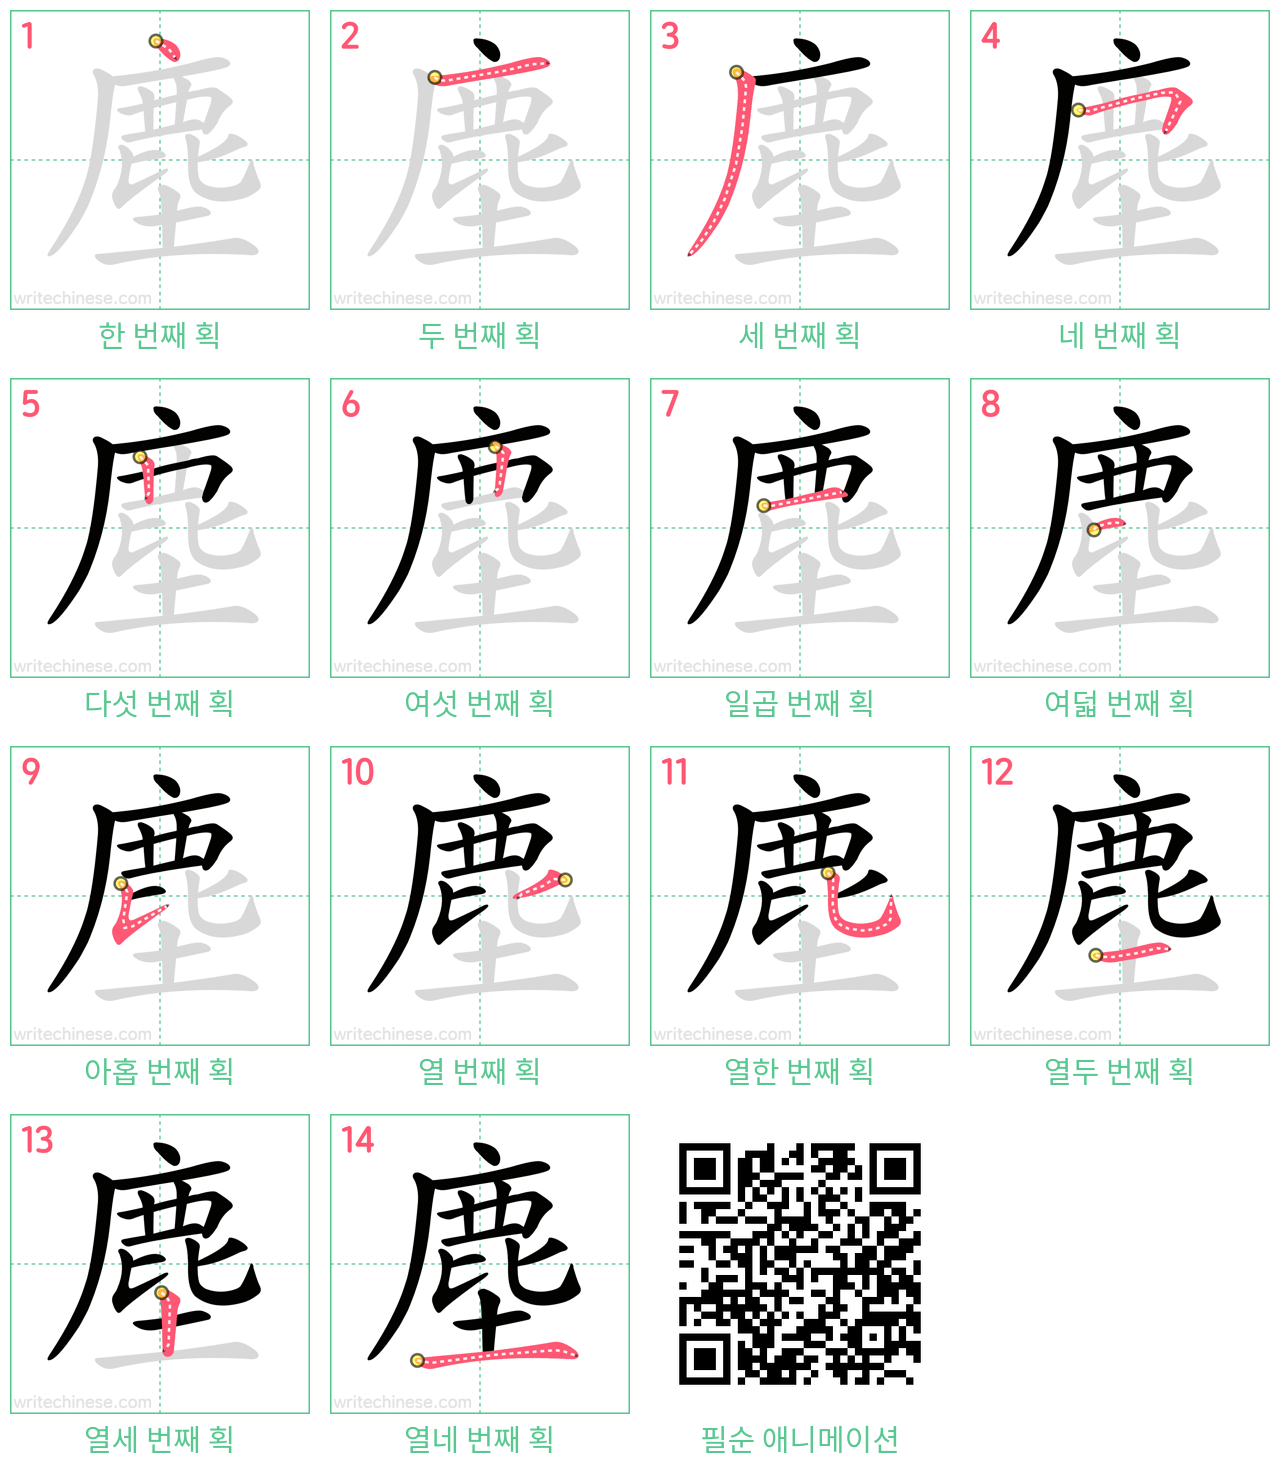 塵 step-by-step stroke order diagrams